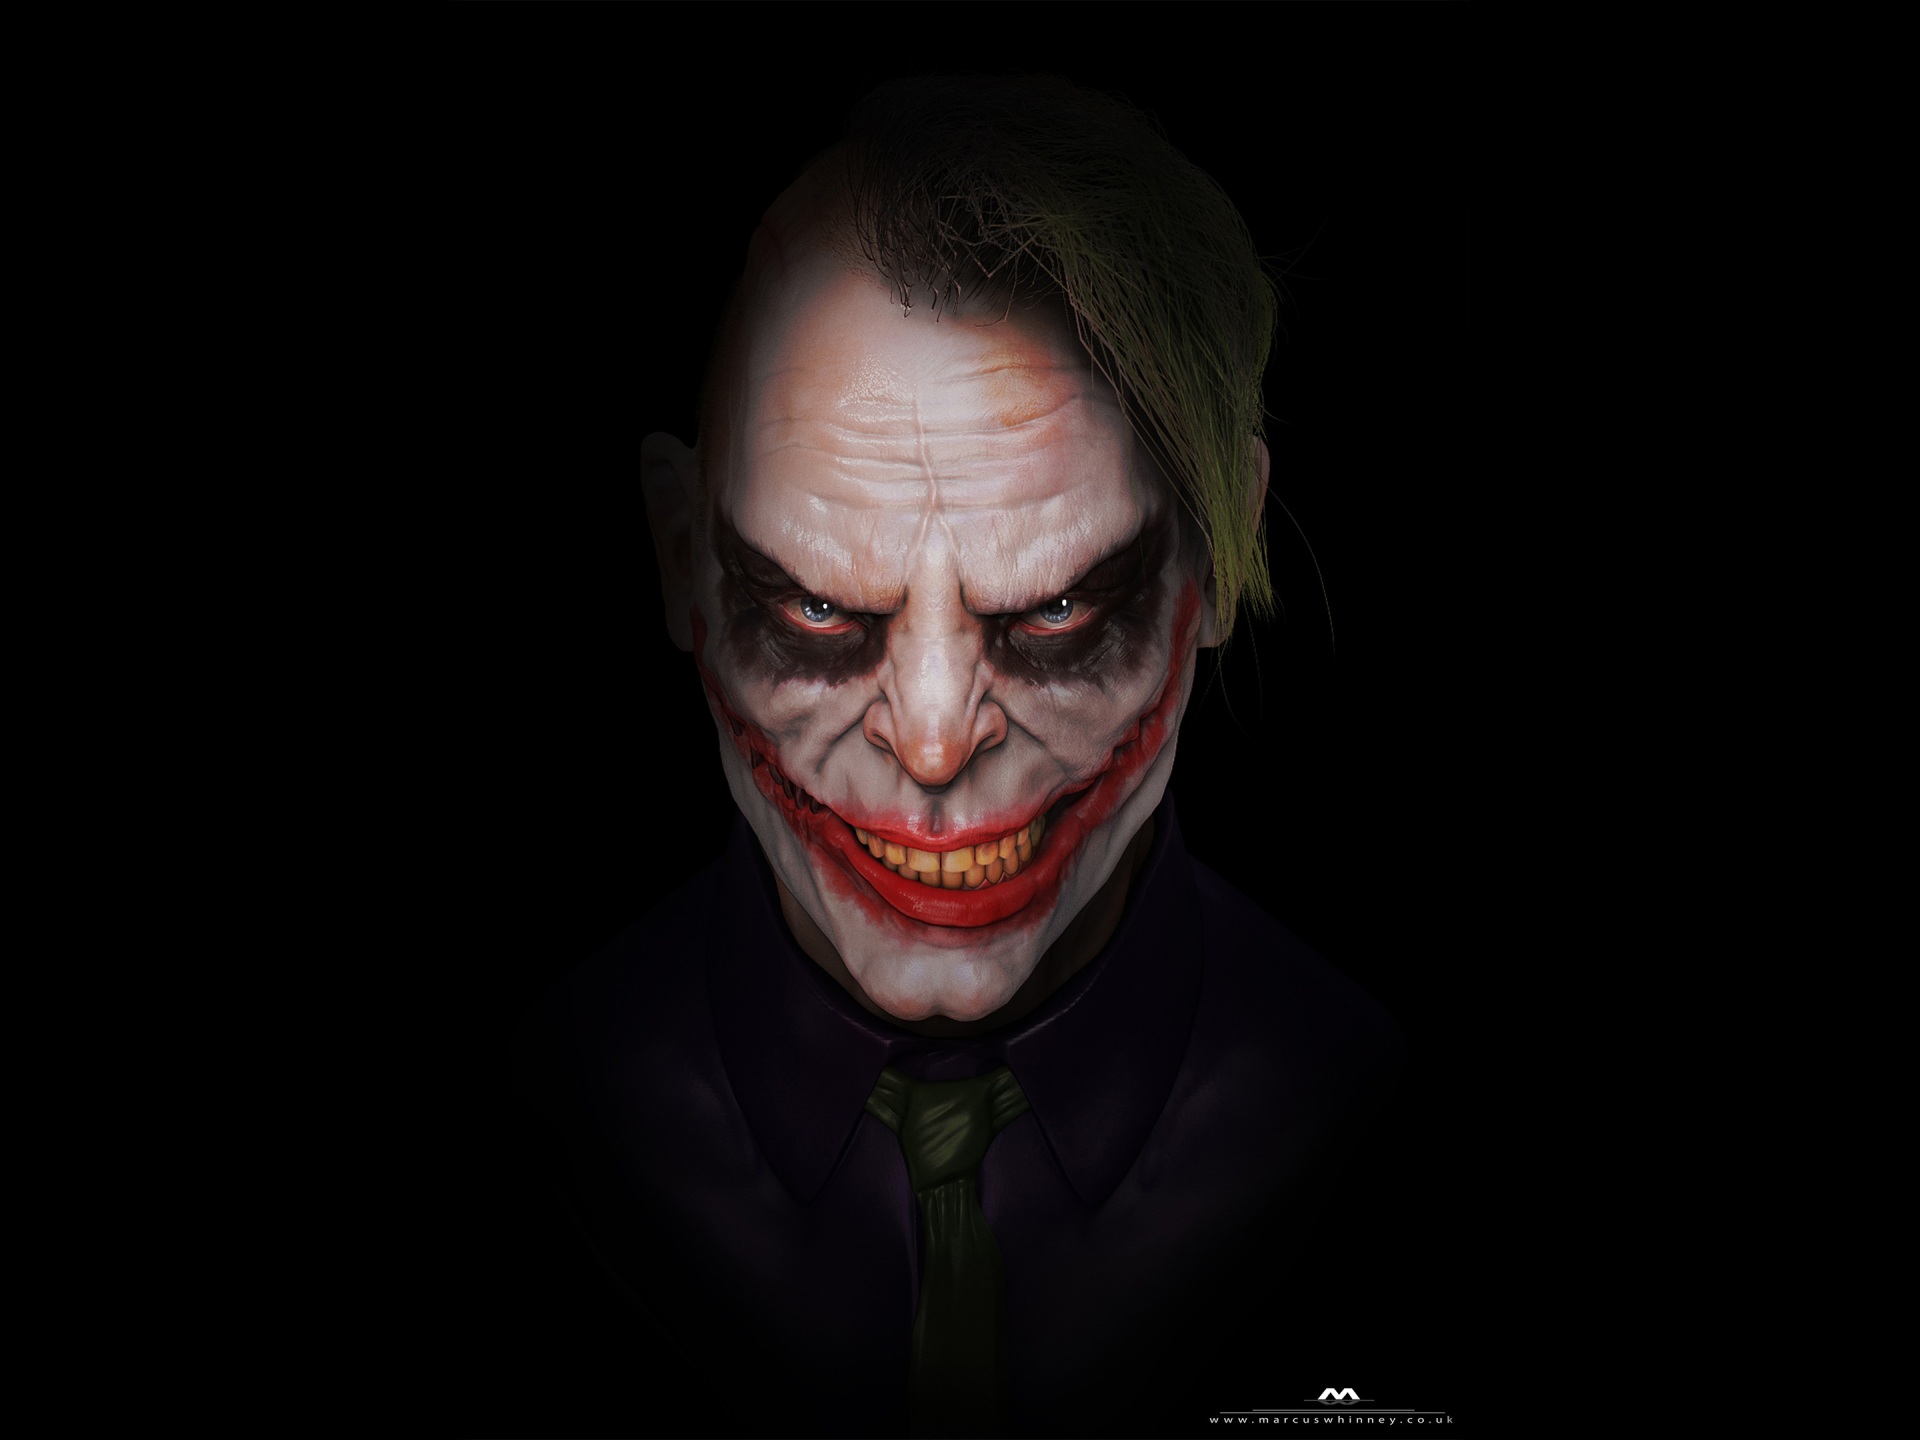 Scary Joker 4k - 4k Wallpapers - 40.000+ ipad wallpapers 4k - 4k ...